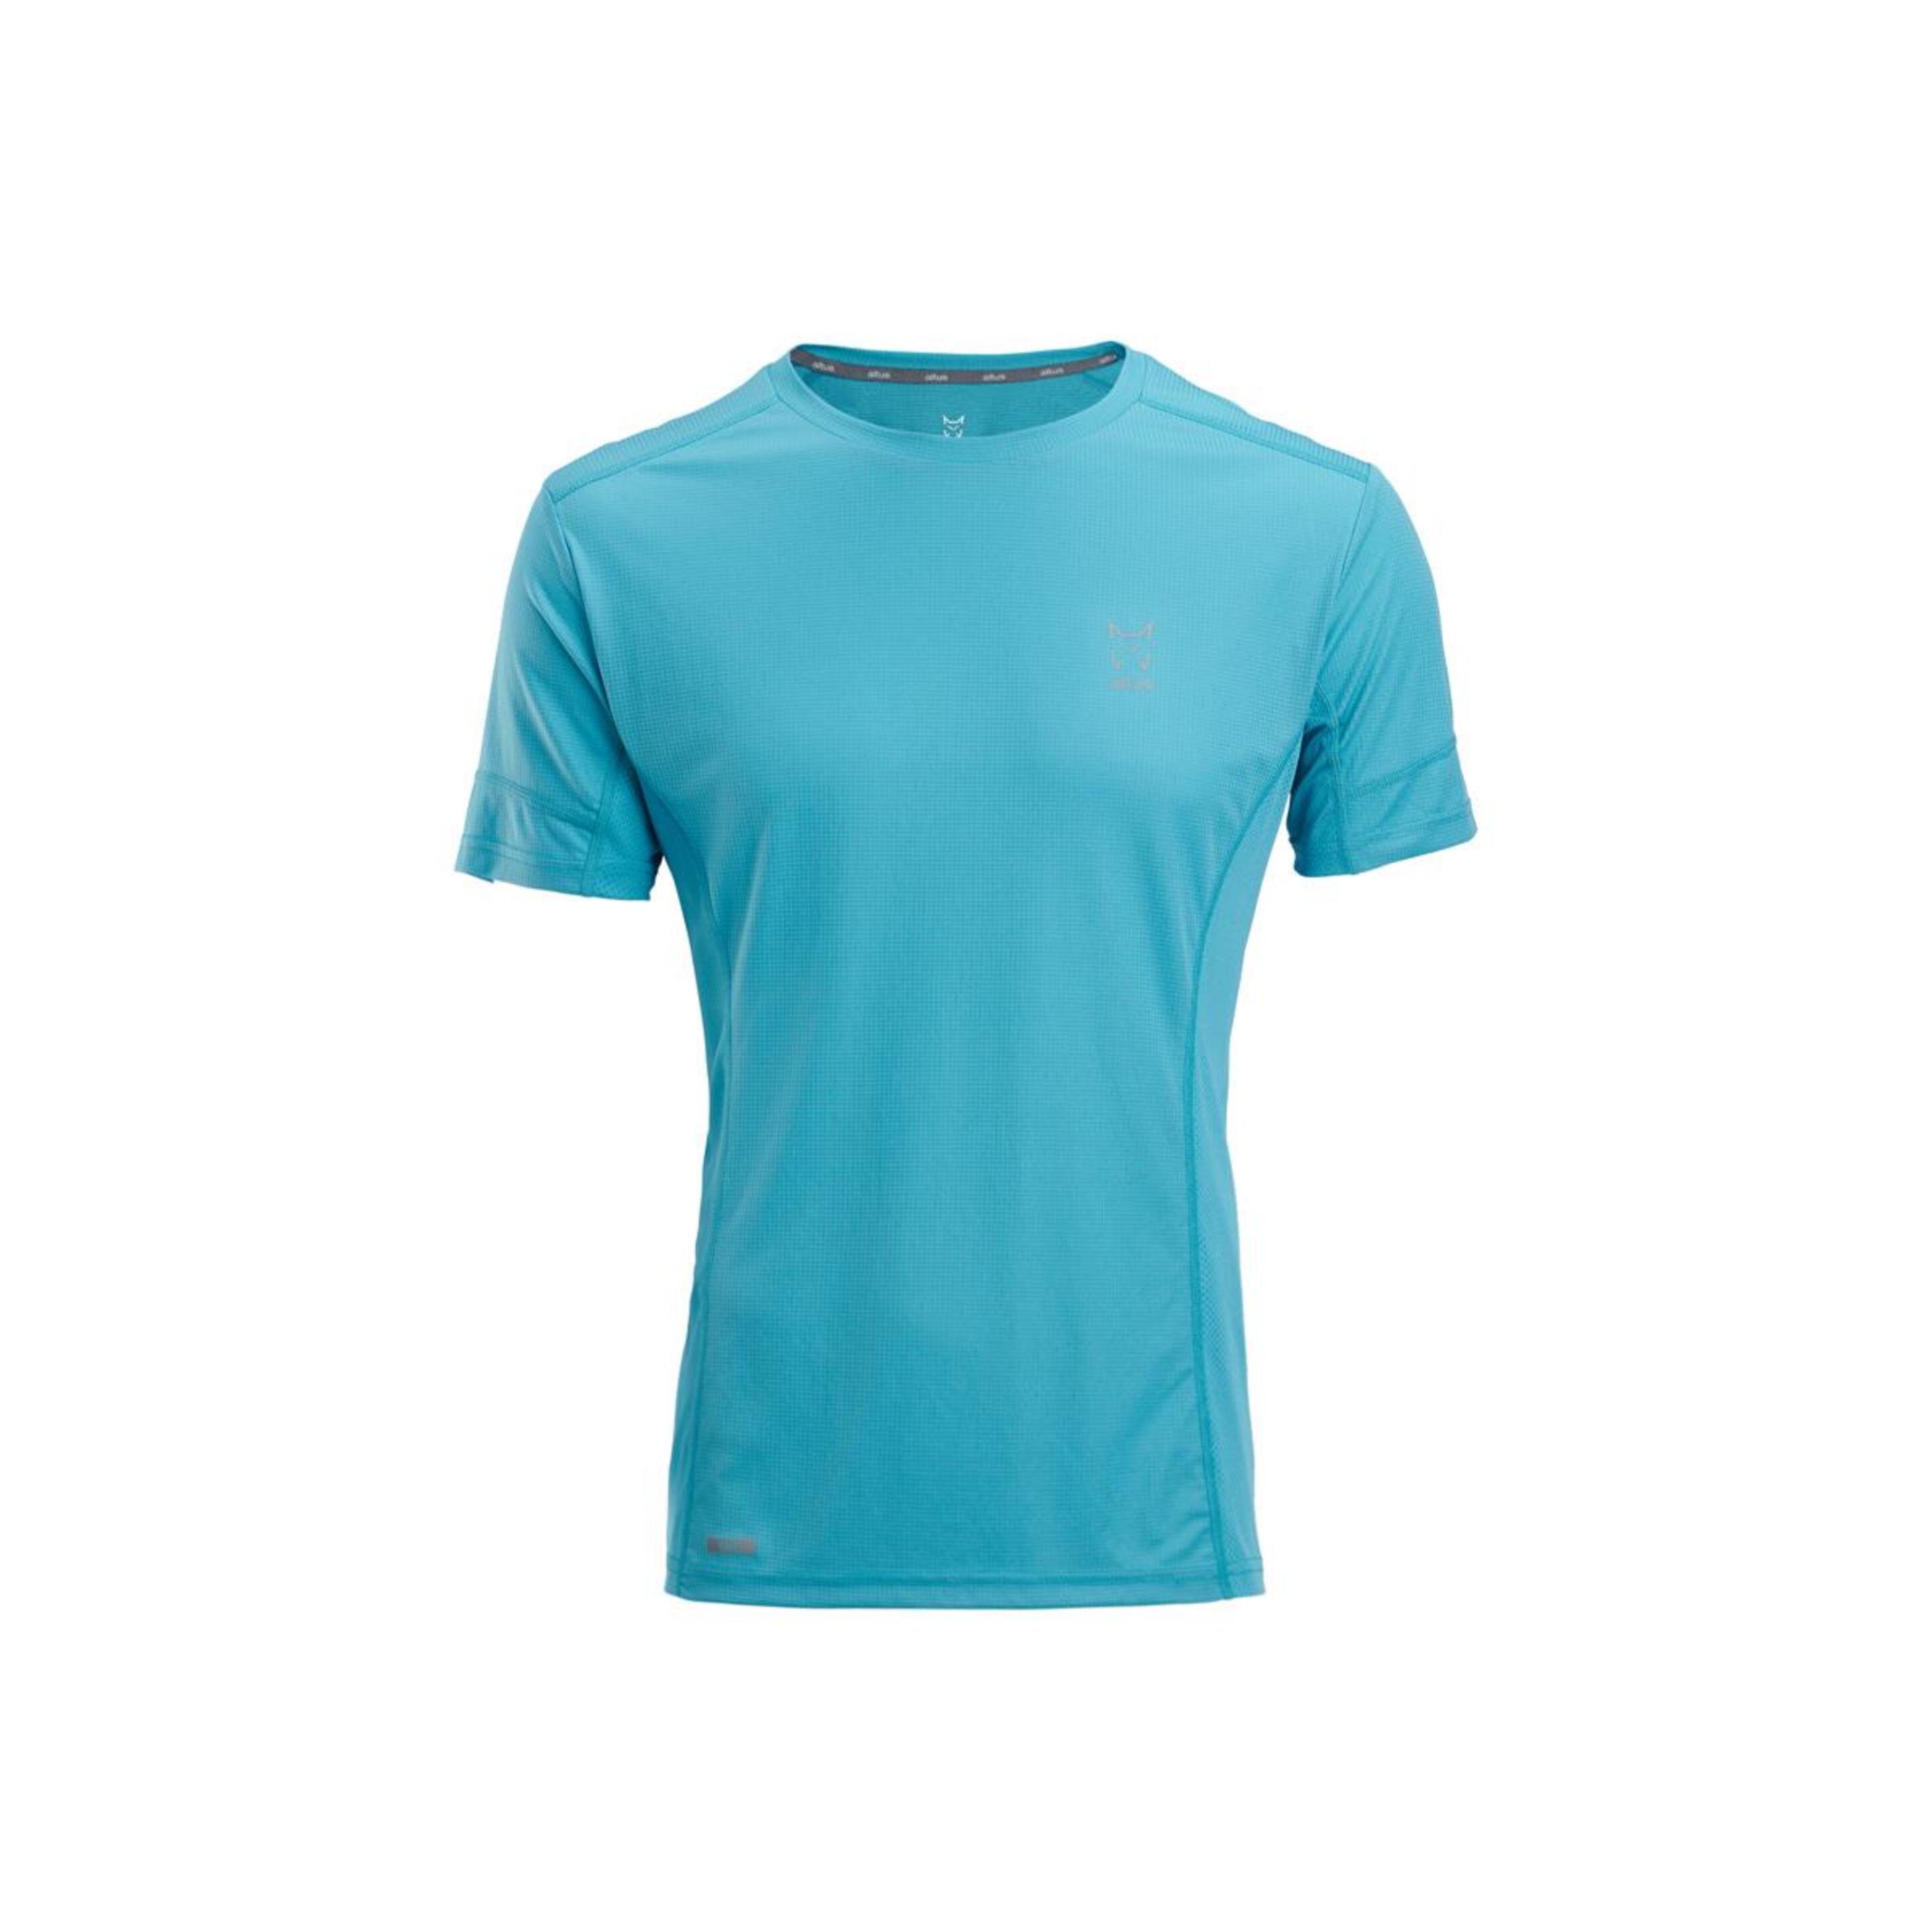 Camiseta Altus Eire - azul - 